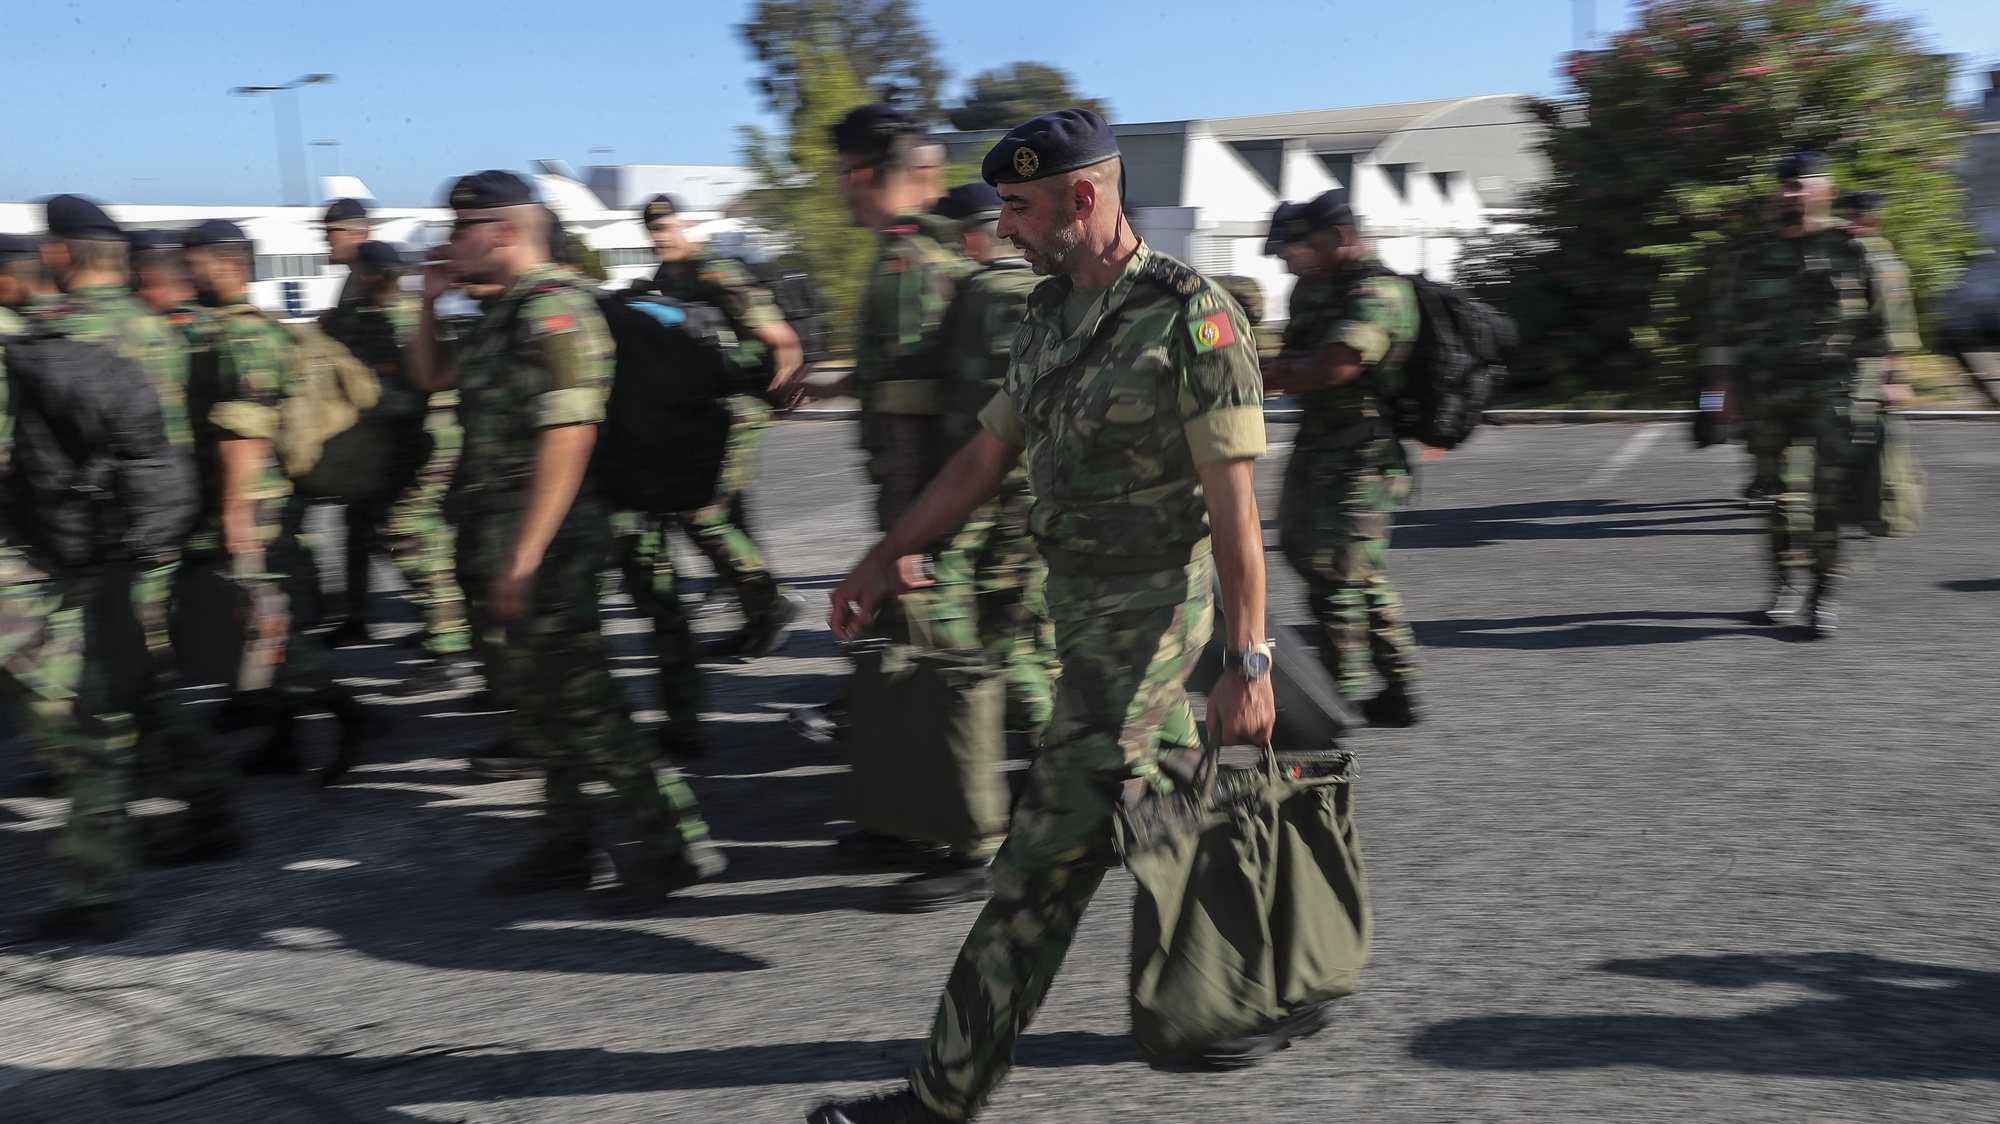 A Força de Fuzileiros, composta por 146 militares da Marinha Portuguesa, regressa da Lituânia, após três meses de missão no quadro das medidas de tranquilização da NATO para o flanco leste da Aliança, cerimónia de receção aos militares portugueses presidida pelo chefe do Estado-Maior da Armada, almirante Henrique Gouveia e Melo (ausente da fotografia), em Figo Maduro, Lisboa, 29 de agosto de 2022. MIGUEL A. LOPES/LUSA